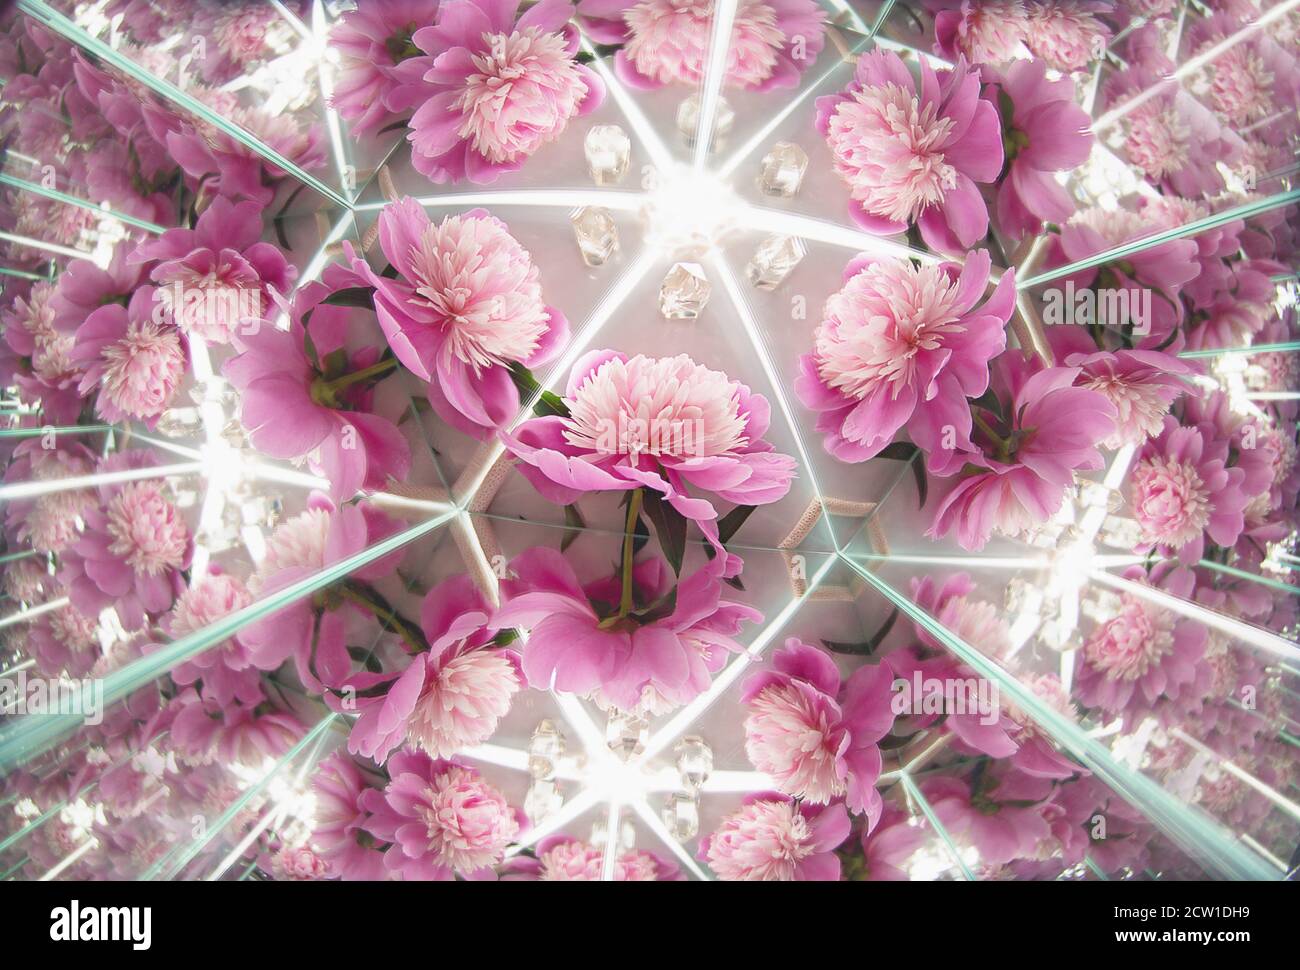 Eine Fotografie von Rose Pfingstrosen Blumen in Kaleidoskop Spiegel Reflexion Stil Hintergrund auf weißem Marmor Textur. Für natürliche, luxuriöse und unkonventionelle Stockfoto